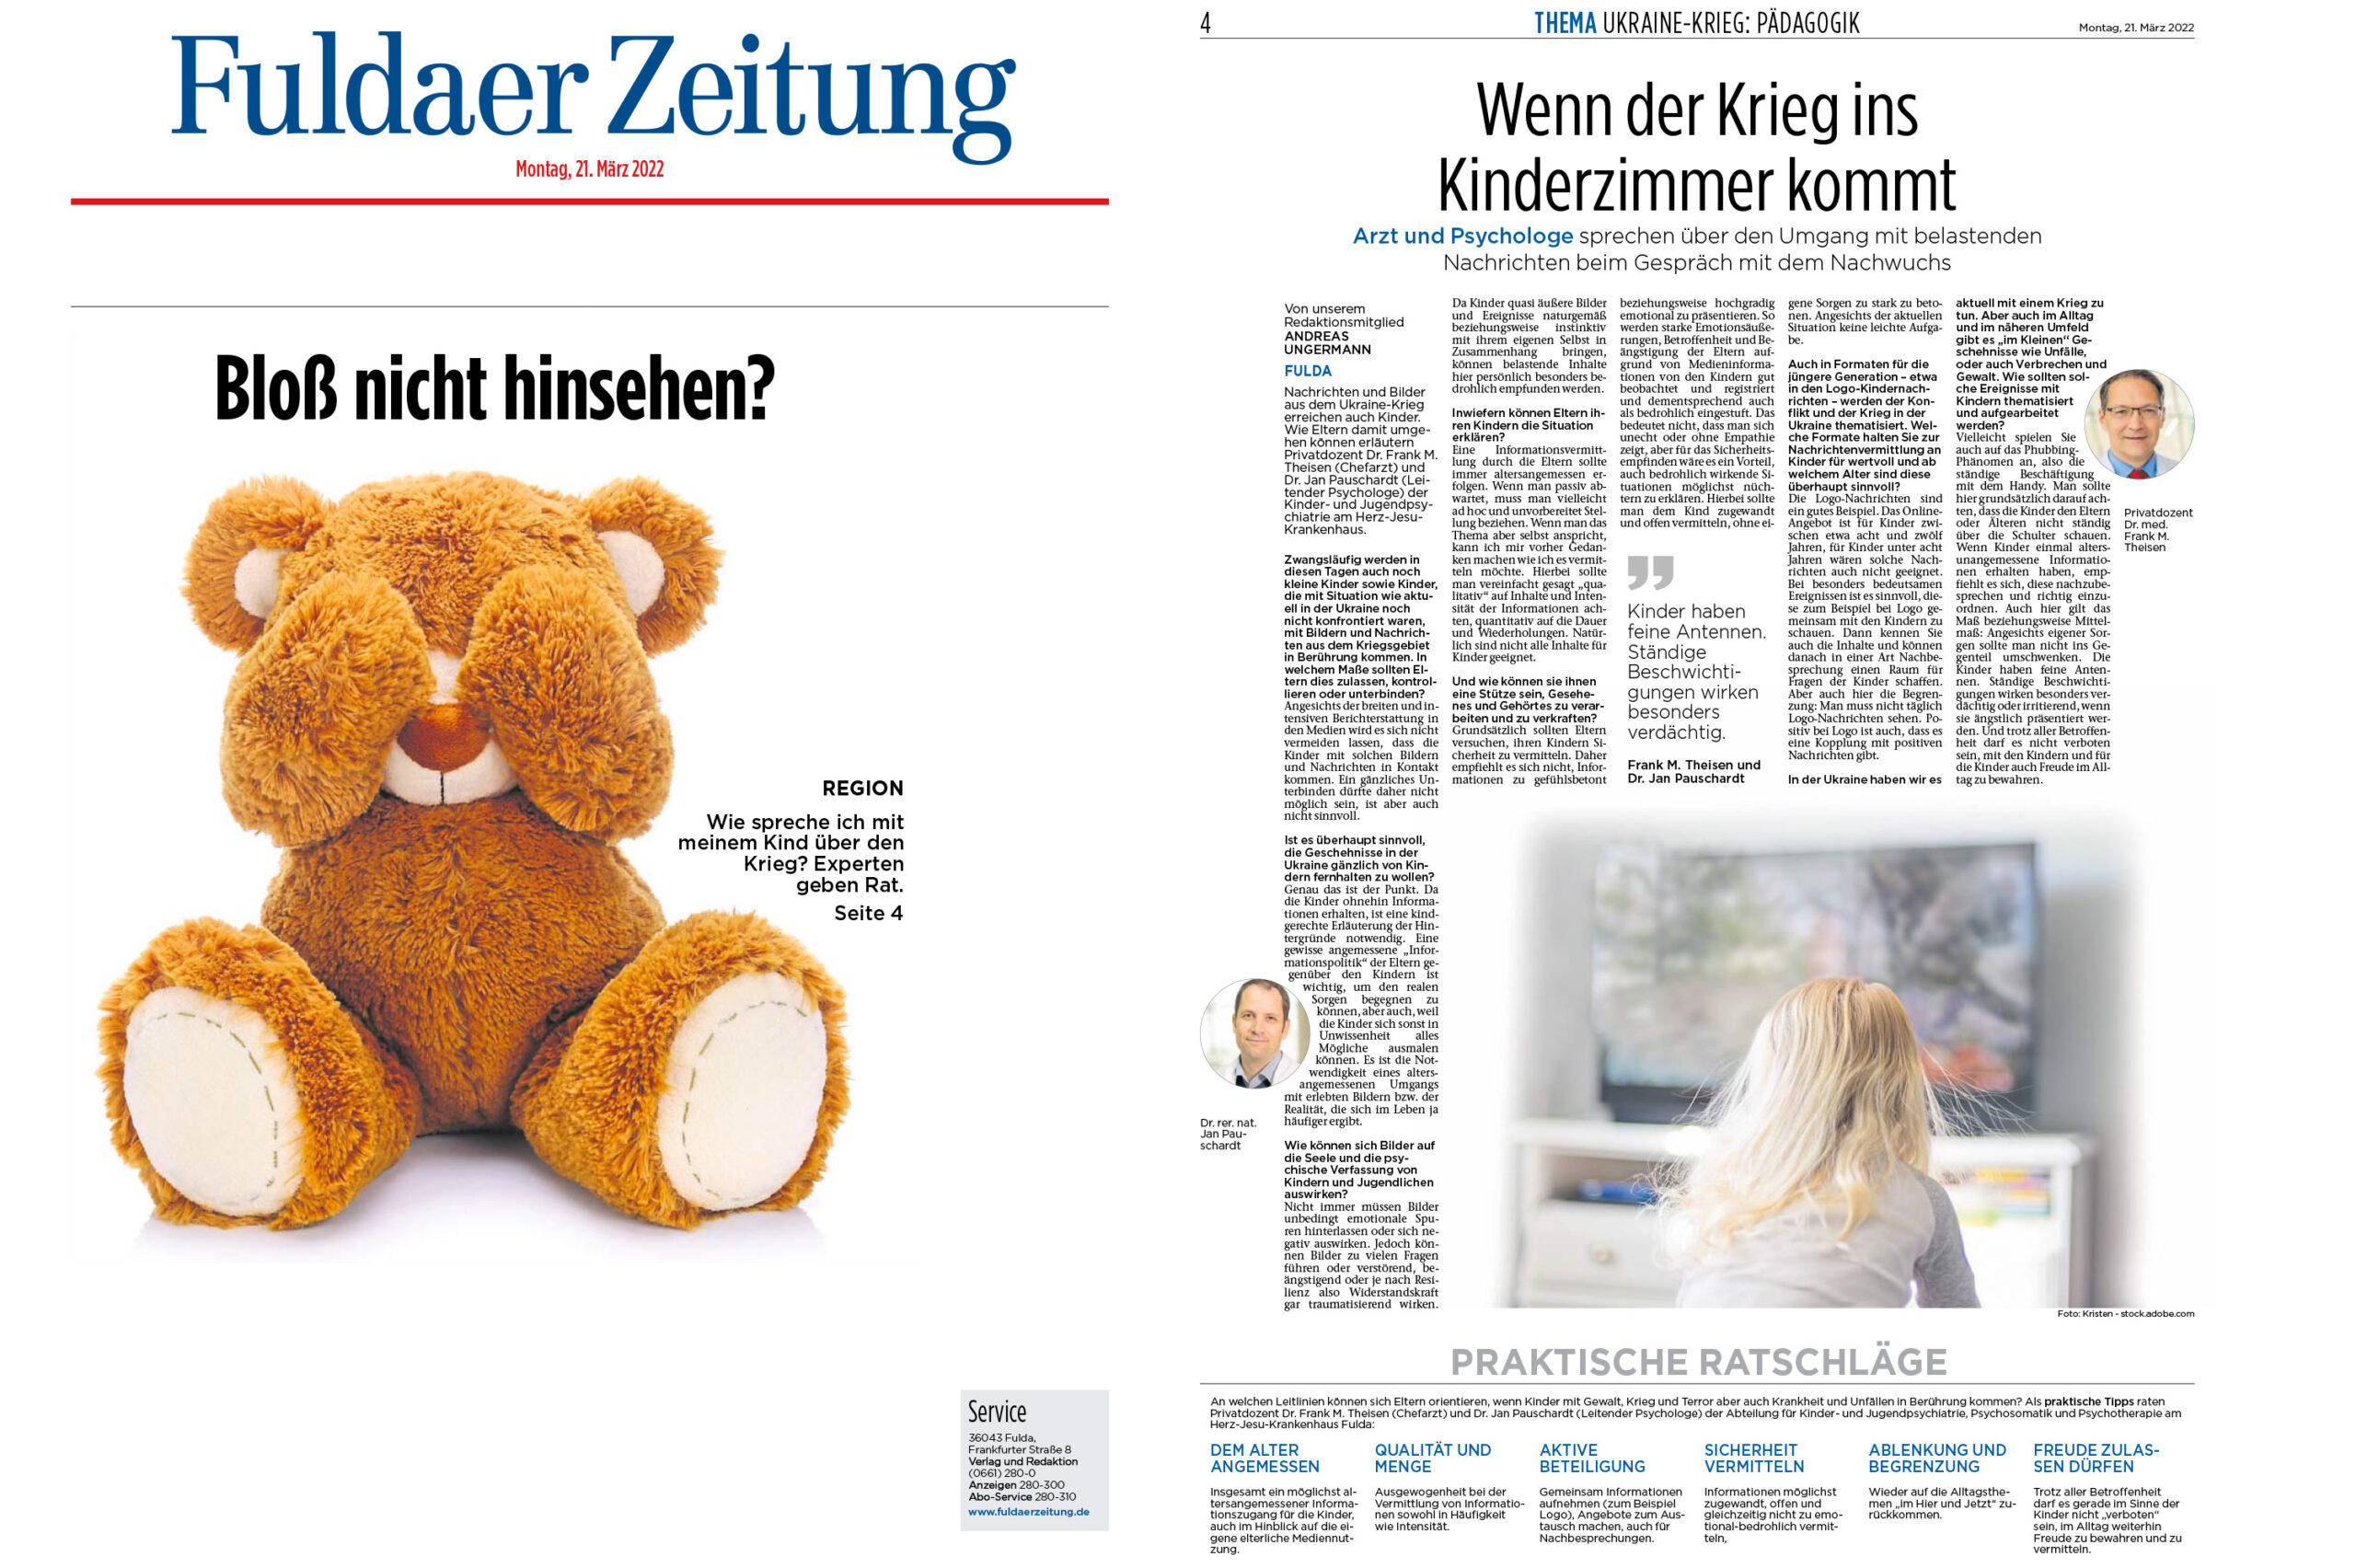 Fuldaer Zeitung: Wenn der Krieg ins Kinderzimmer kommt (Wie spreche ich mit meinem Kind über den Krieg?)